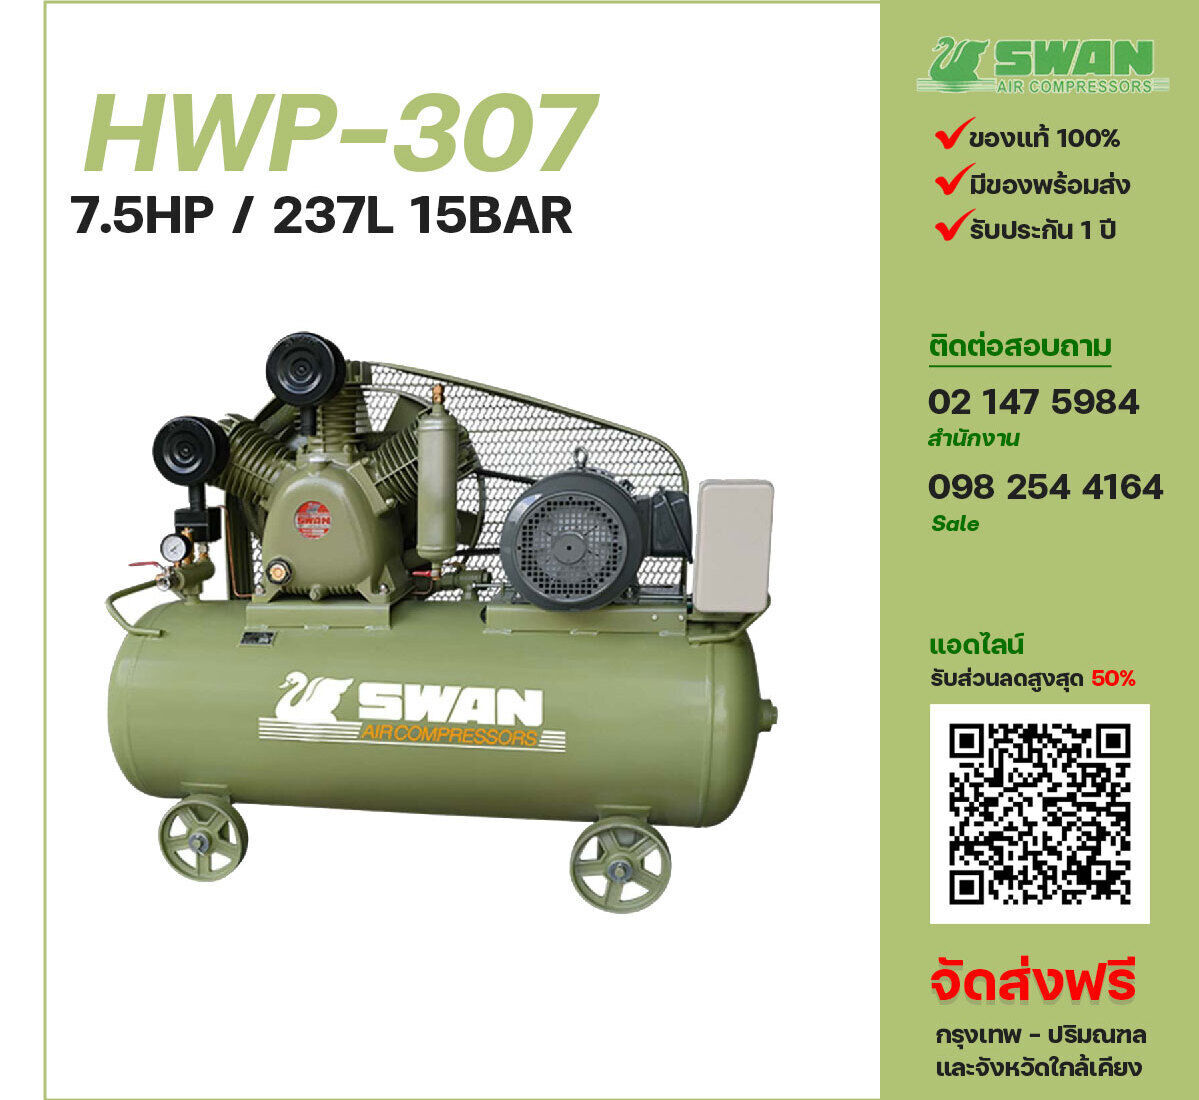 ปั๊มลมสวอนแรงดันสูง SWAN HWP-307 380V ปั๊มลมลูกสูบ ขนาด 3 สูบ 7.5 แรงม้า 237 ลิตร SWAN พร้อมมอเตอร์ ไฟ 380V ส่งฟรี กรุงเทพฯ-ปริมณฑล รับประกัน 1 ปี